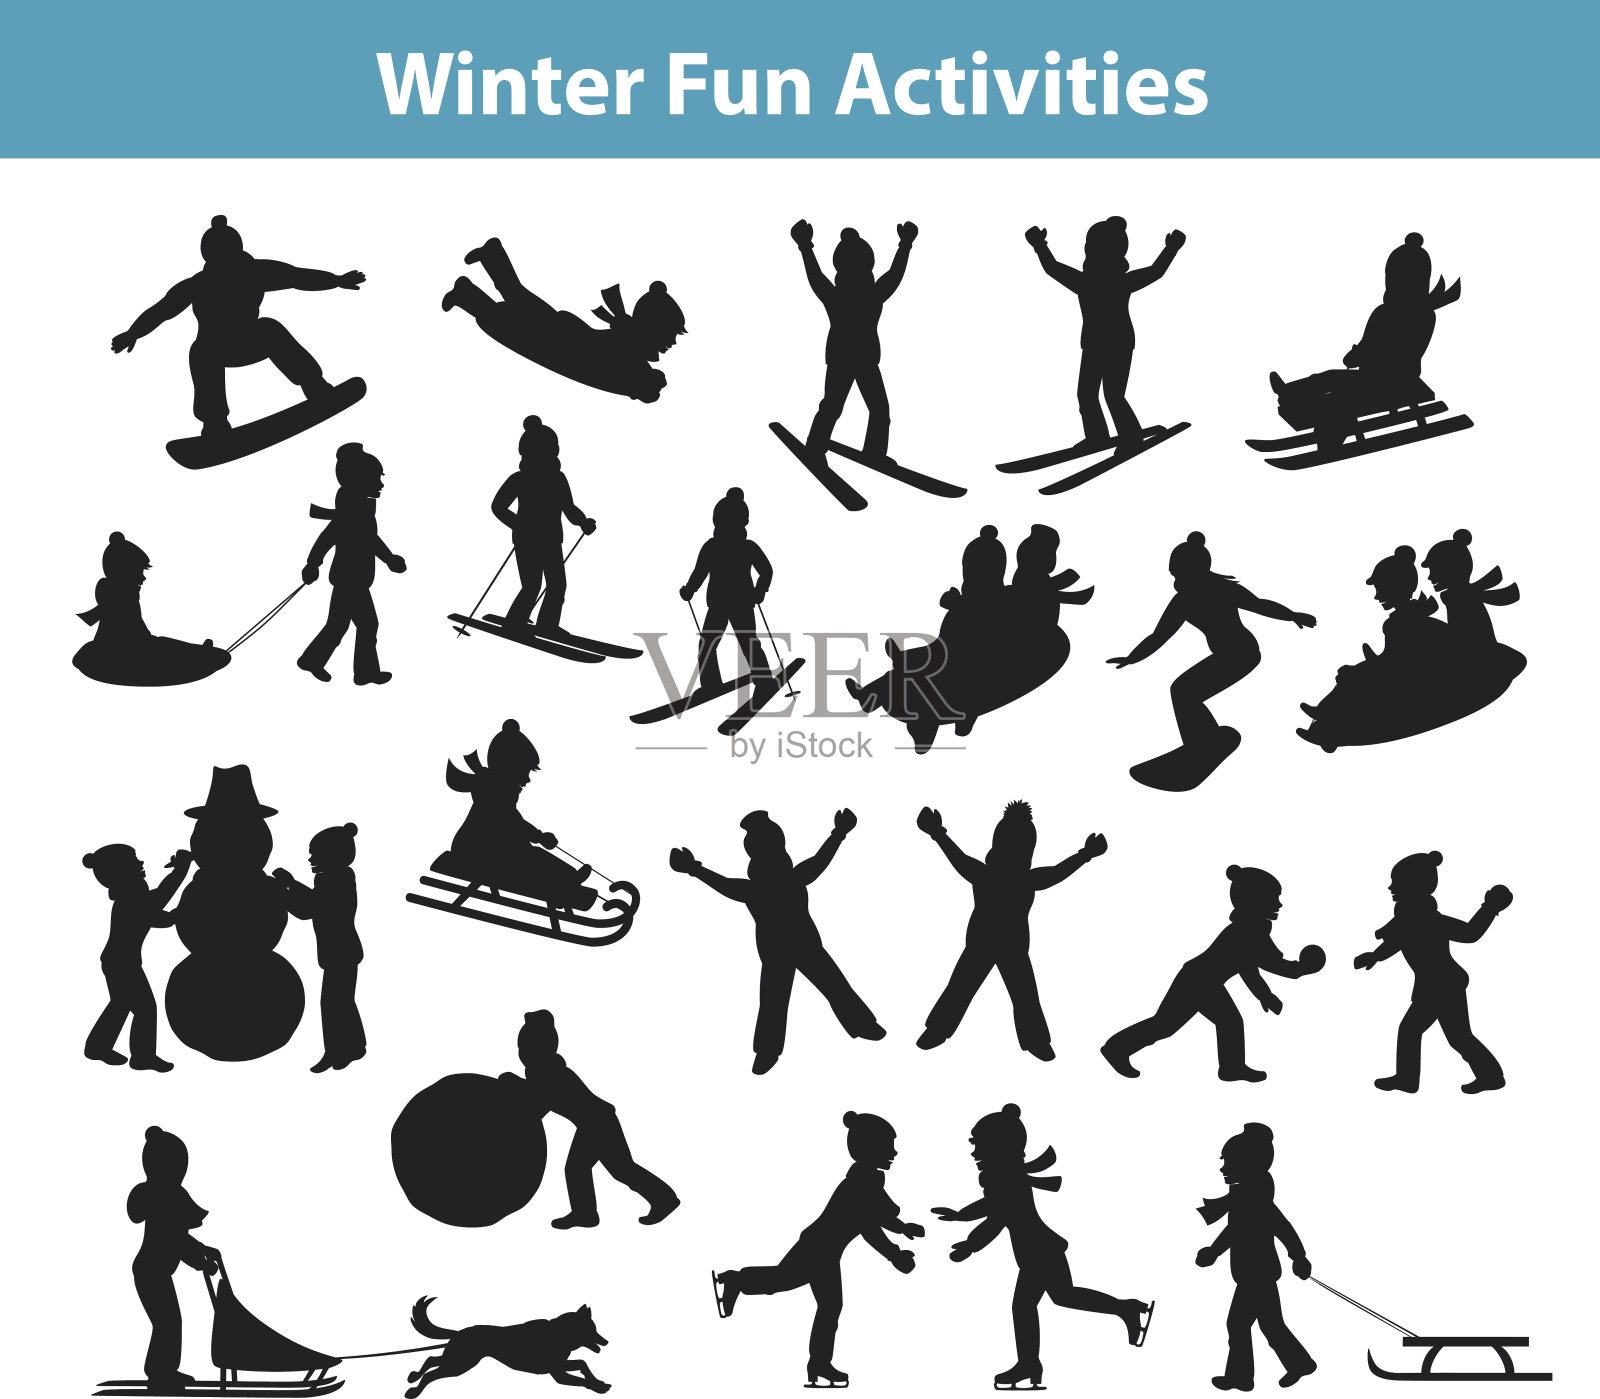 孩子们的冬季趣味活动在冰雪剪影中展开插画图片素材